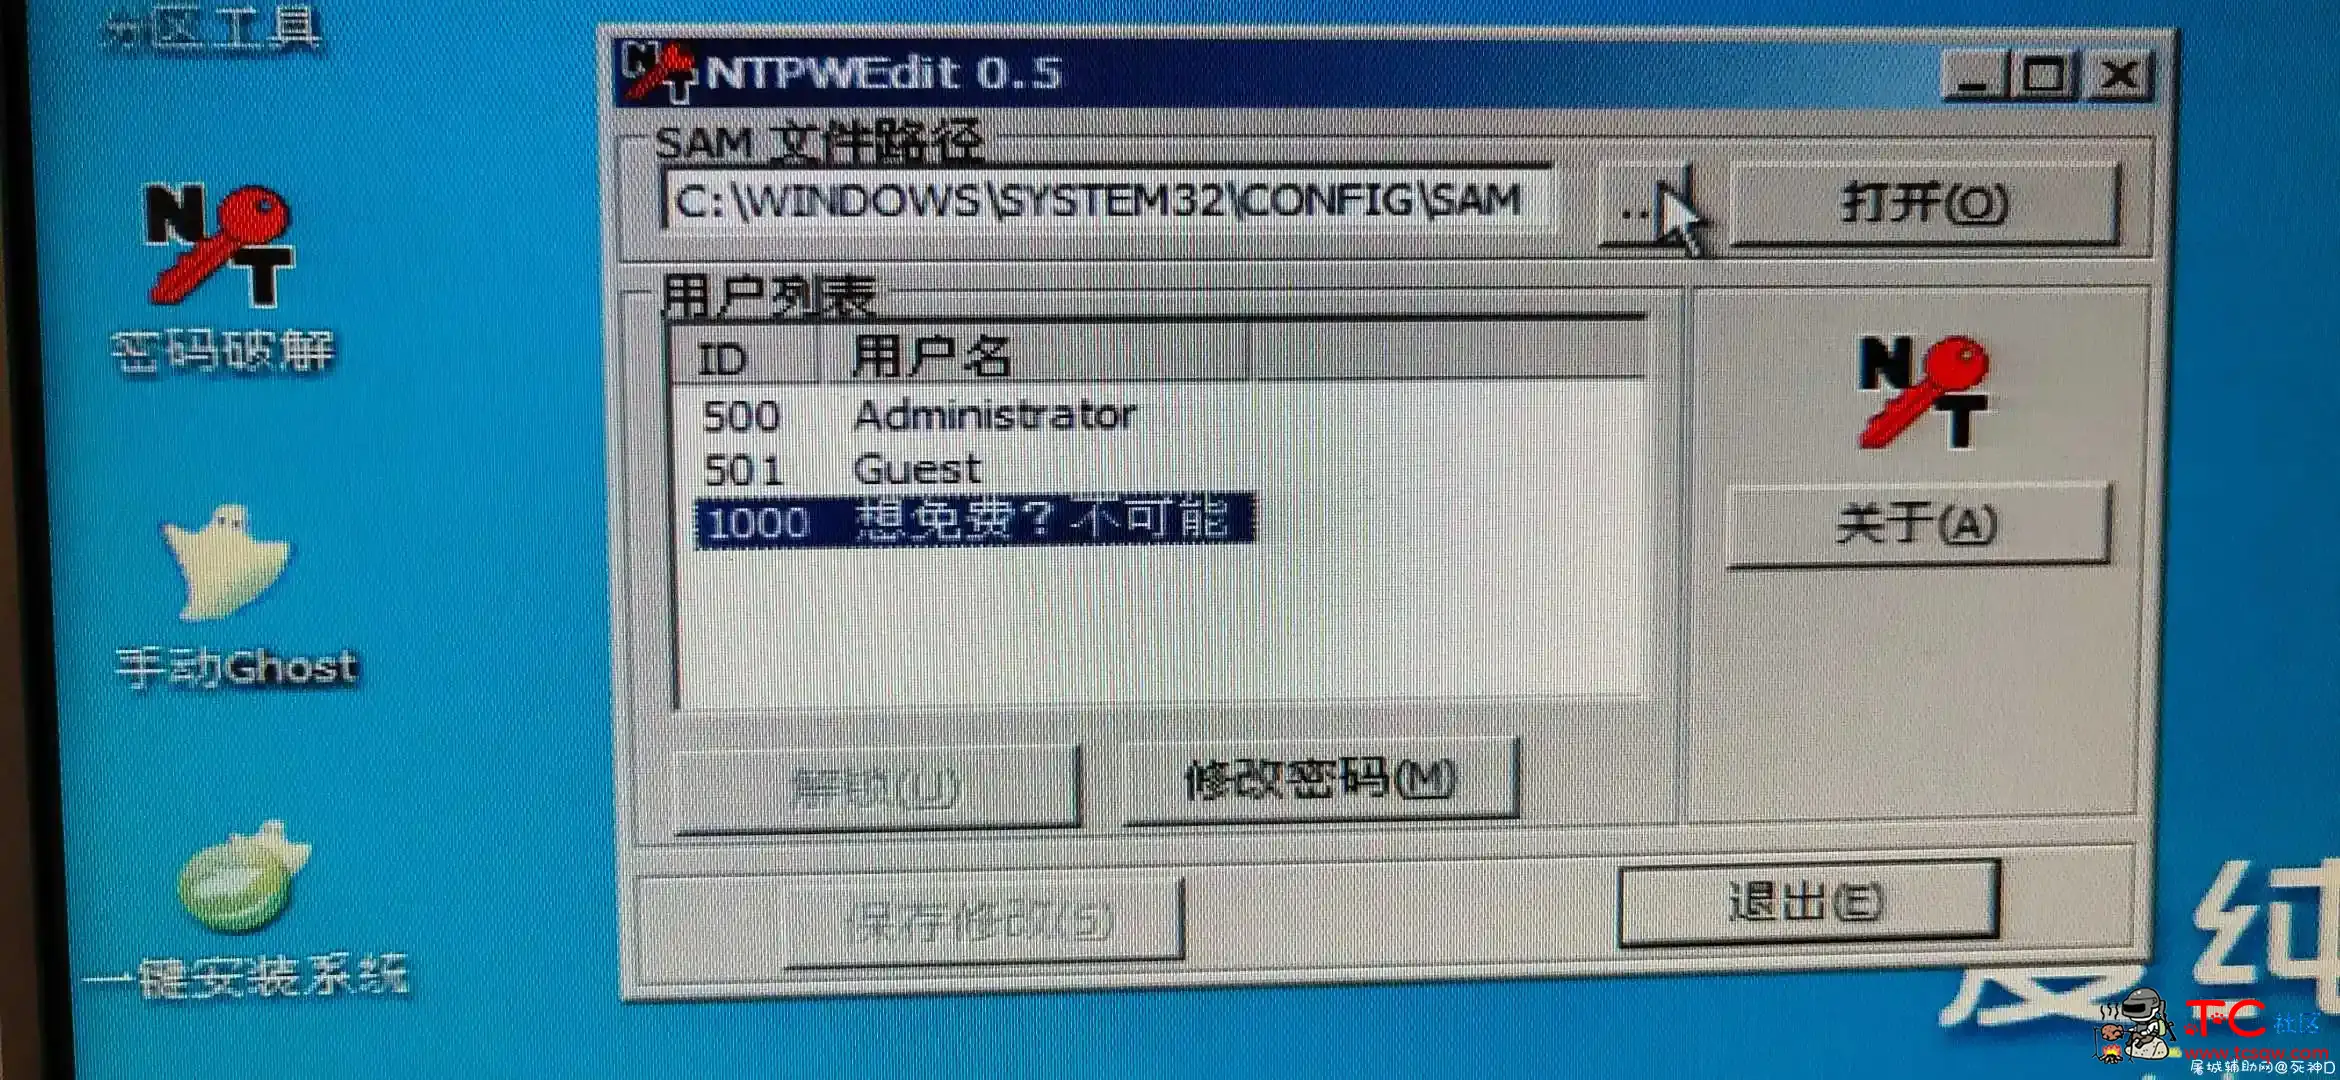 发布锁机软件 屠城辅助网www.tcfz1.com6035